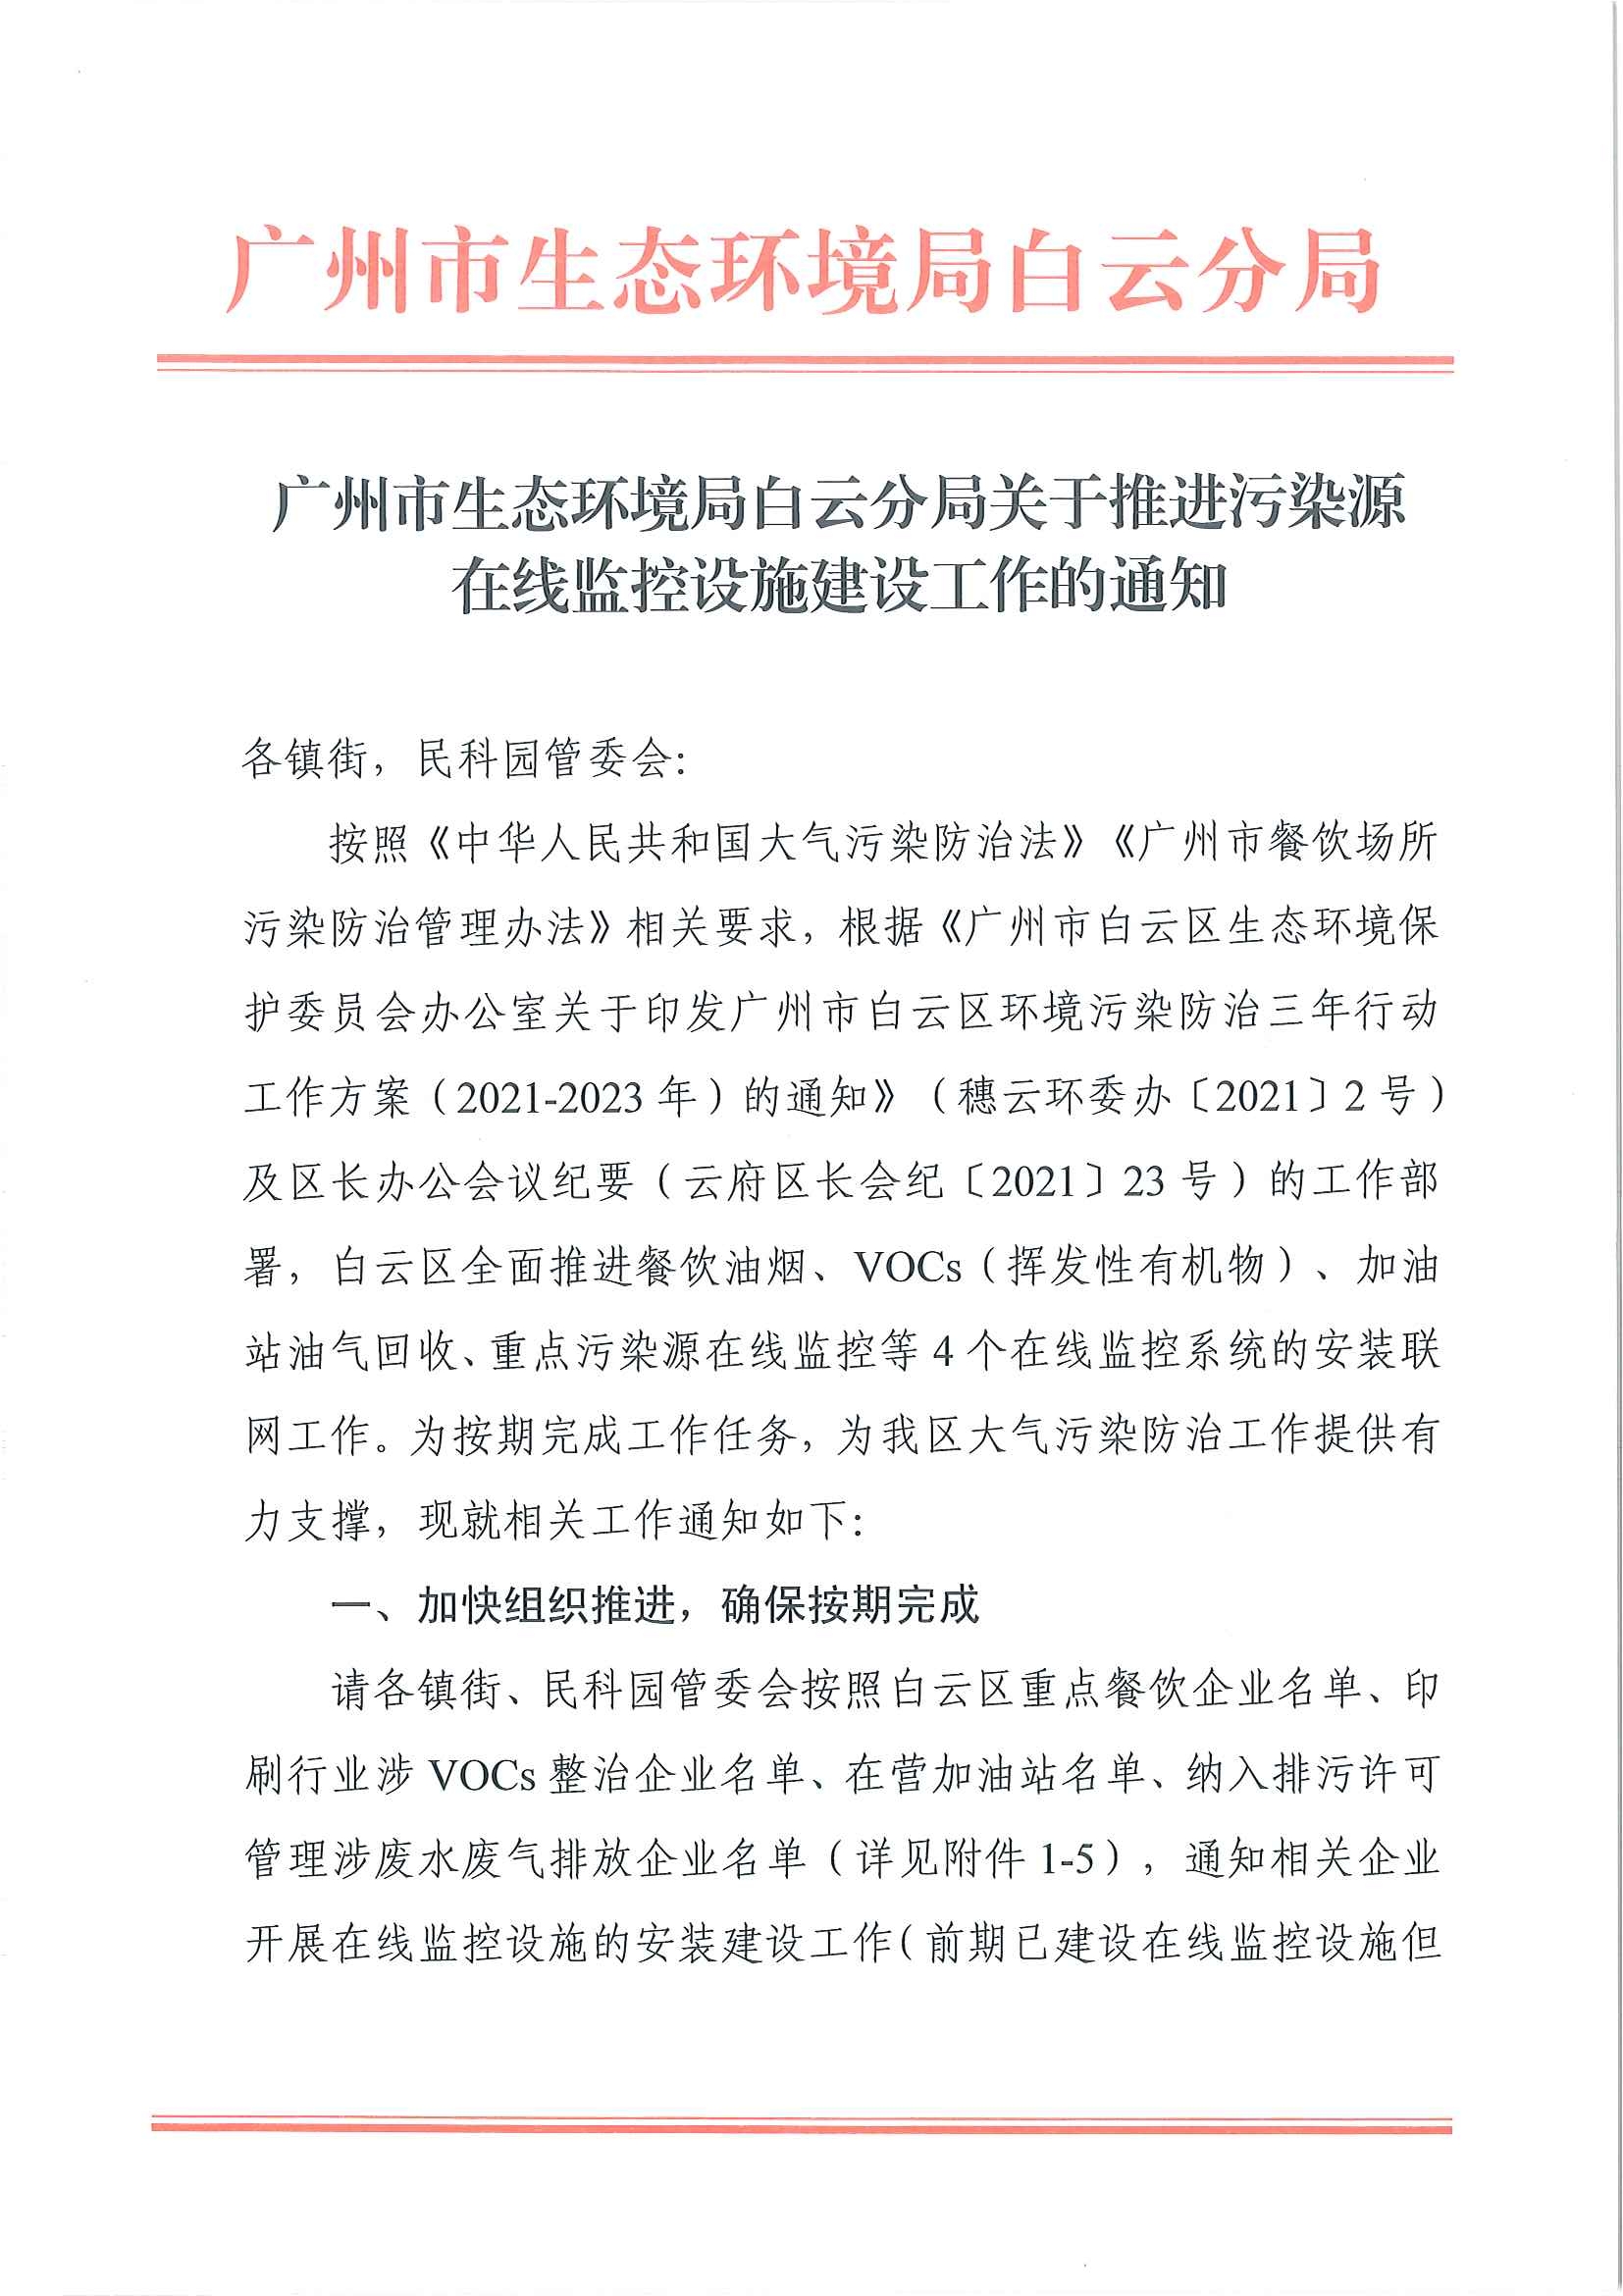 广州市生态环境局白云分局关于推进污染源在线监控设施建设工作的通知(1)_页面_1.jpg